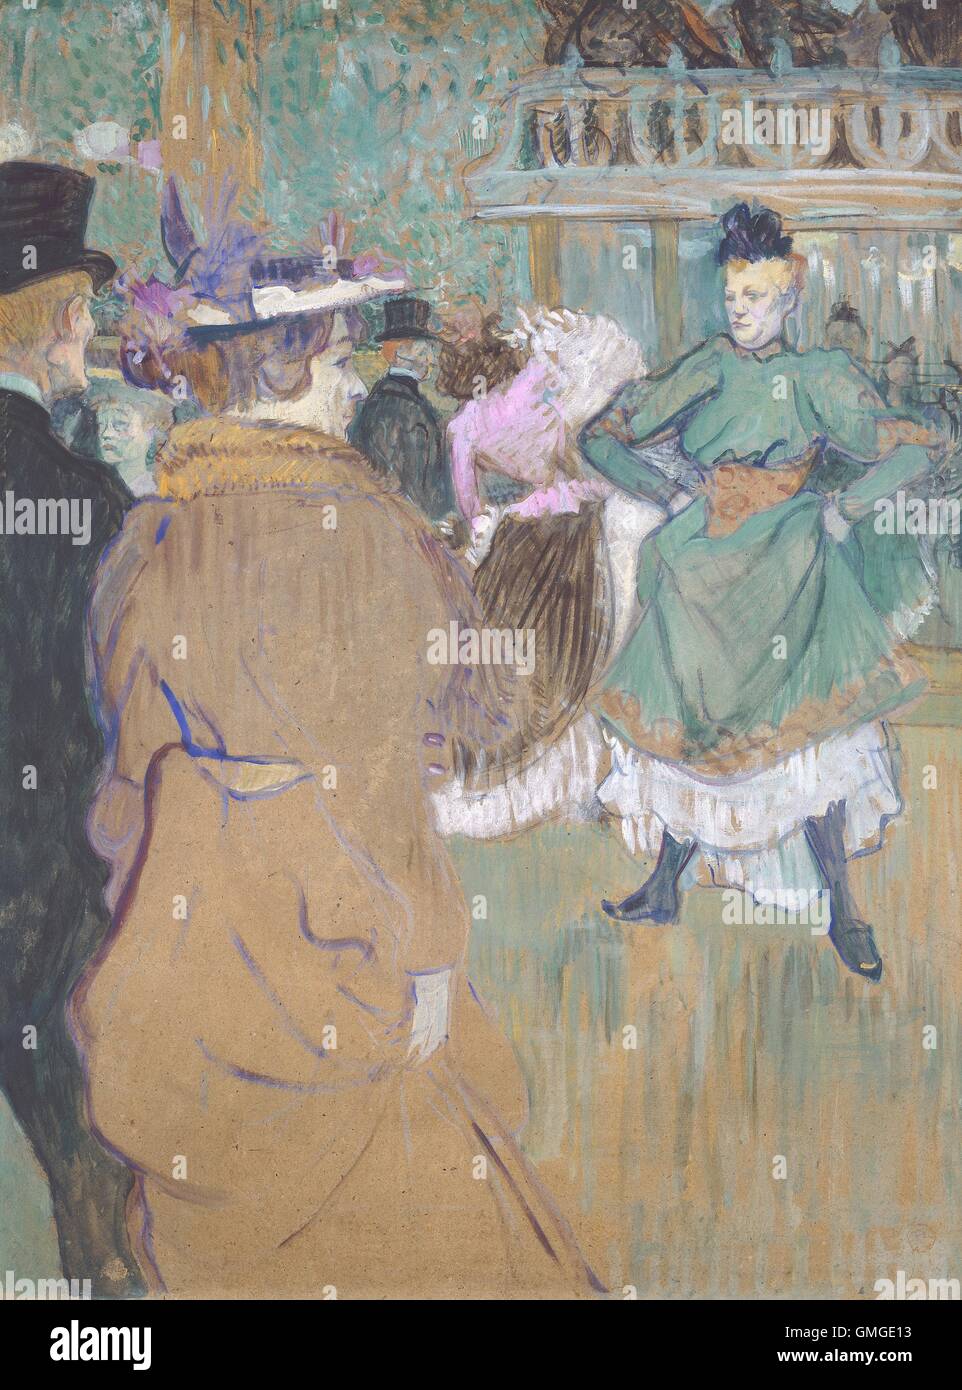 Quadrille au Moulin Rouge, par Henri de Toulouse-Lautrec, 1892, Français le postimpressionnisme peinture, huile sur carton. Le cabaret a ouvert ses portes en 1889, ce qui permet aux gens de tous les milieux de vie de mélanger dans le quartier branché de Montmartre. Quadrille était un BSLOC p (2016 5 248) Banque D'Images